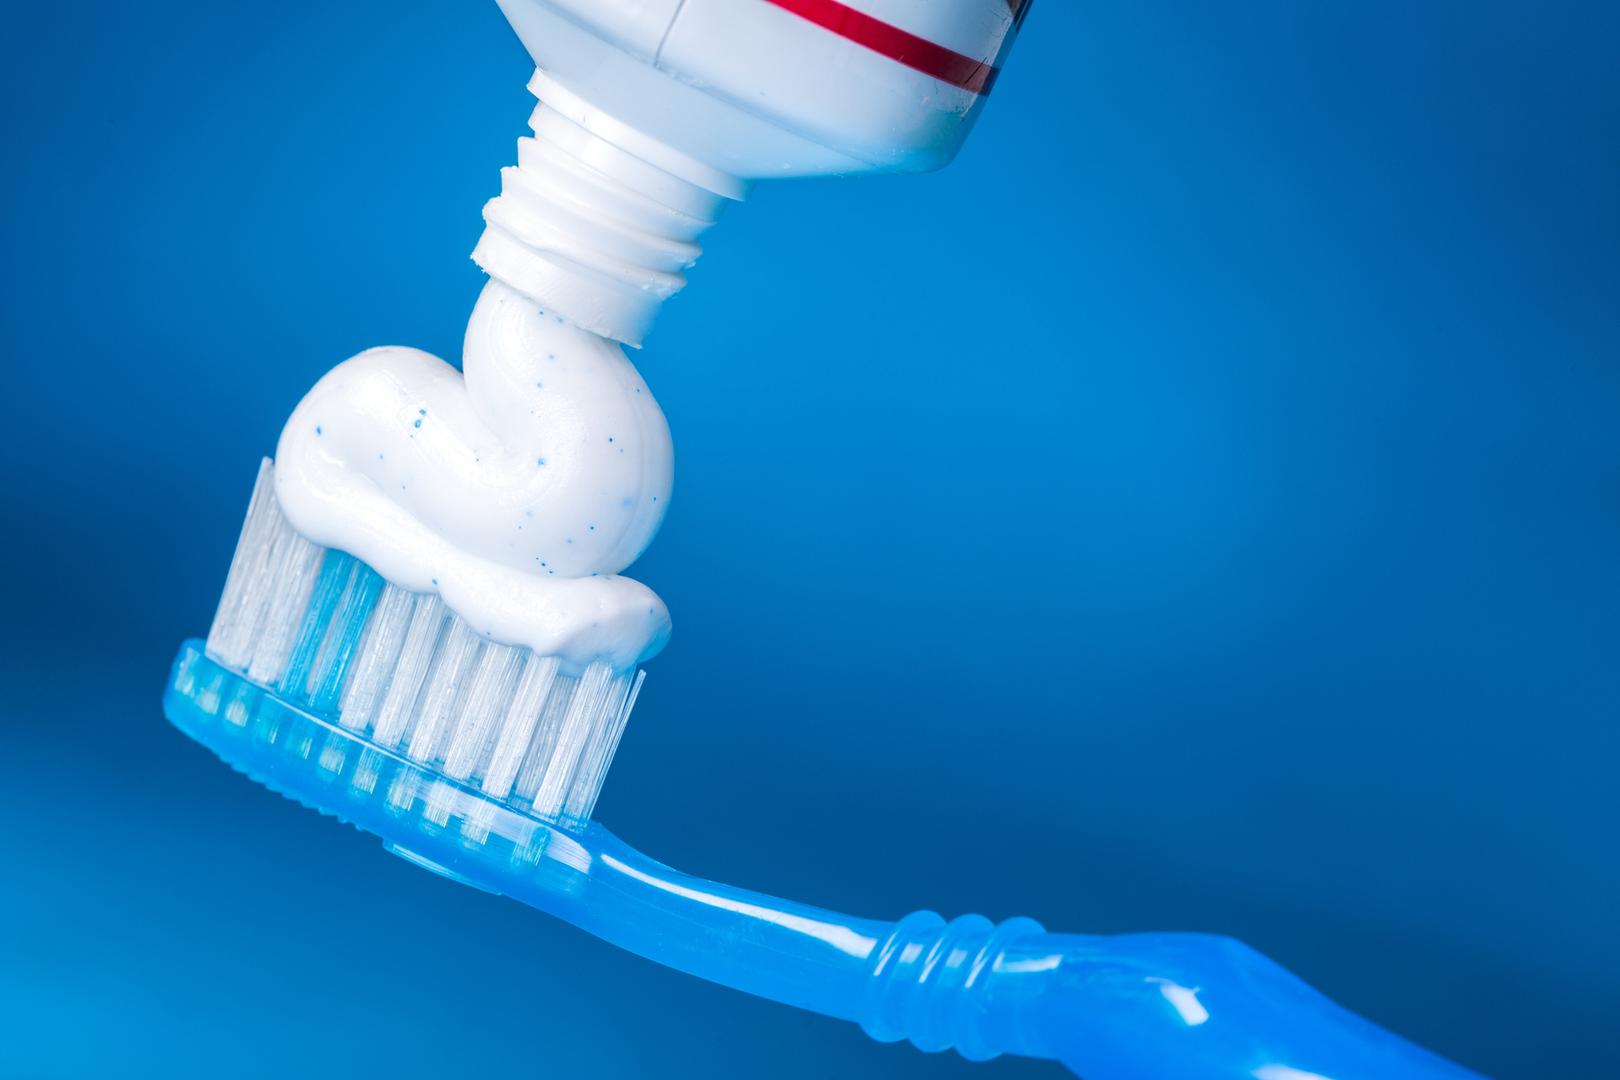 4. Pasta za zube - Vaš vam želudac neće oprostiti pojedete li pastu za zube (što svakako nije pametno). Pogotovo budite oprezni s velikim količinama - može biti fatalno.